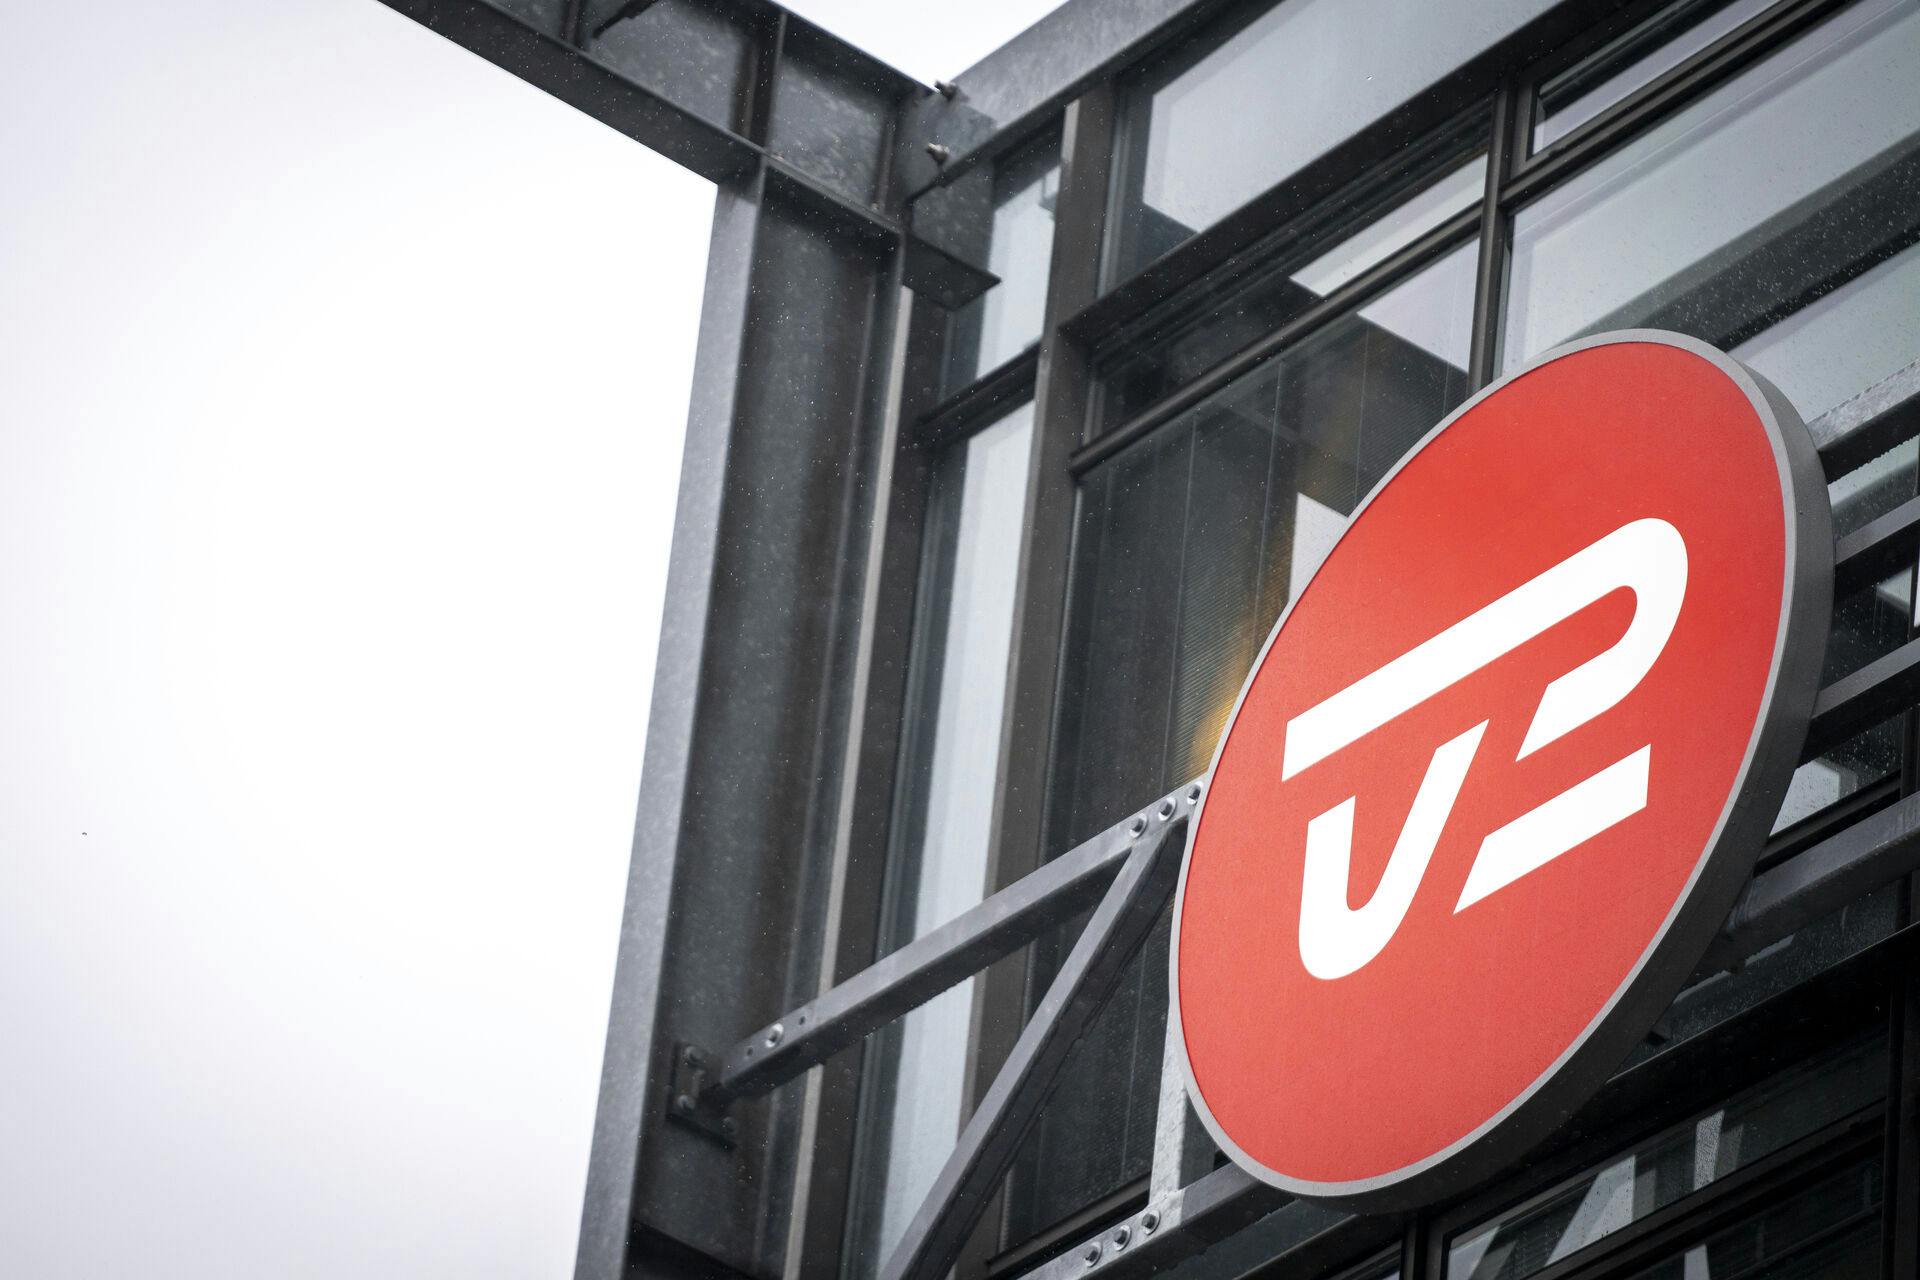 Onsdag valgte ansatte på TV 2 at nedlægge arbejde i protest mod fyringsrunden